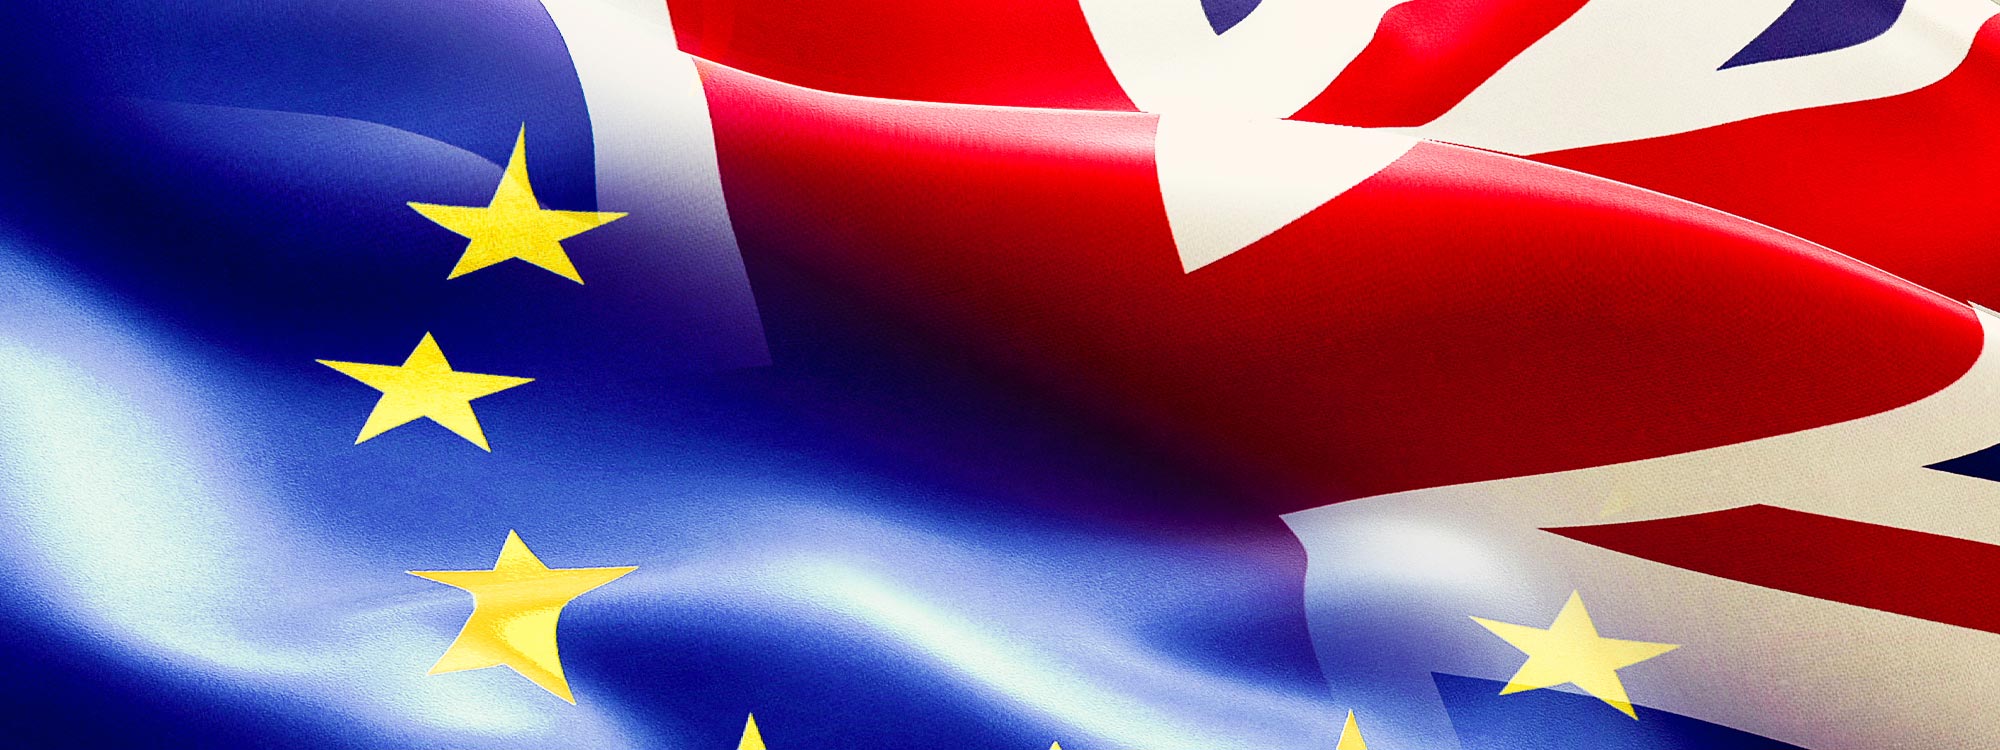 Brexit - Großbritannien verlässt die Europäische Union